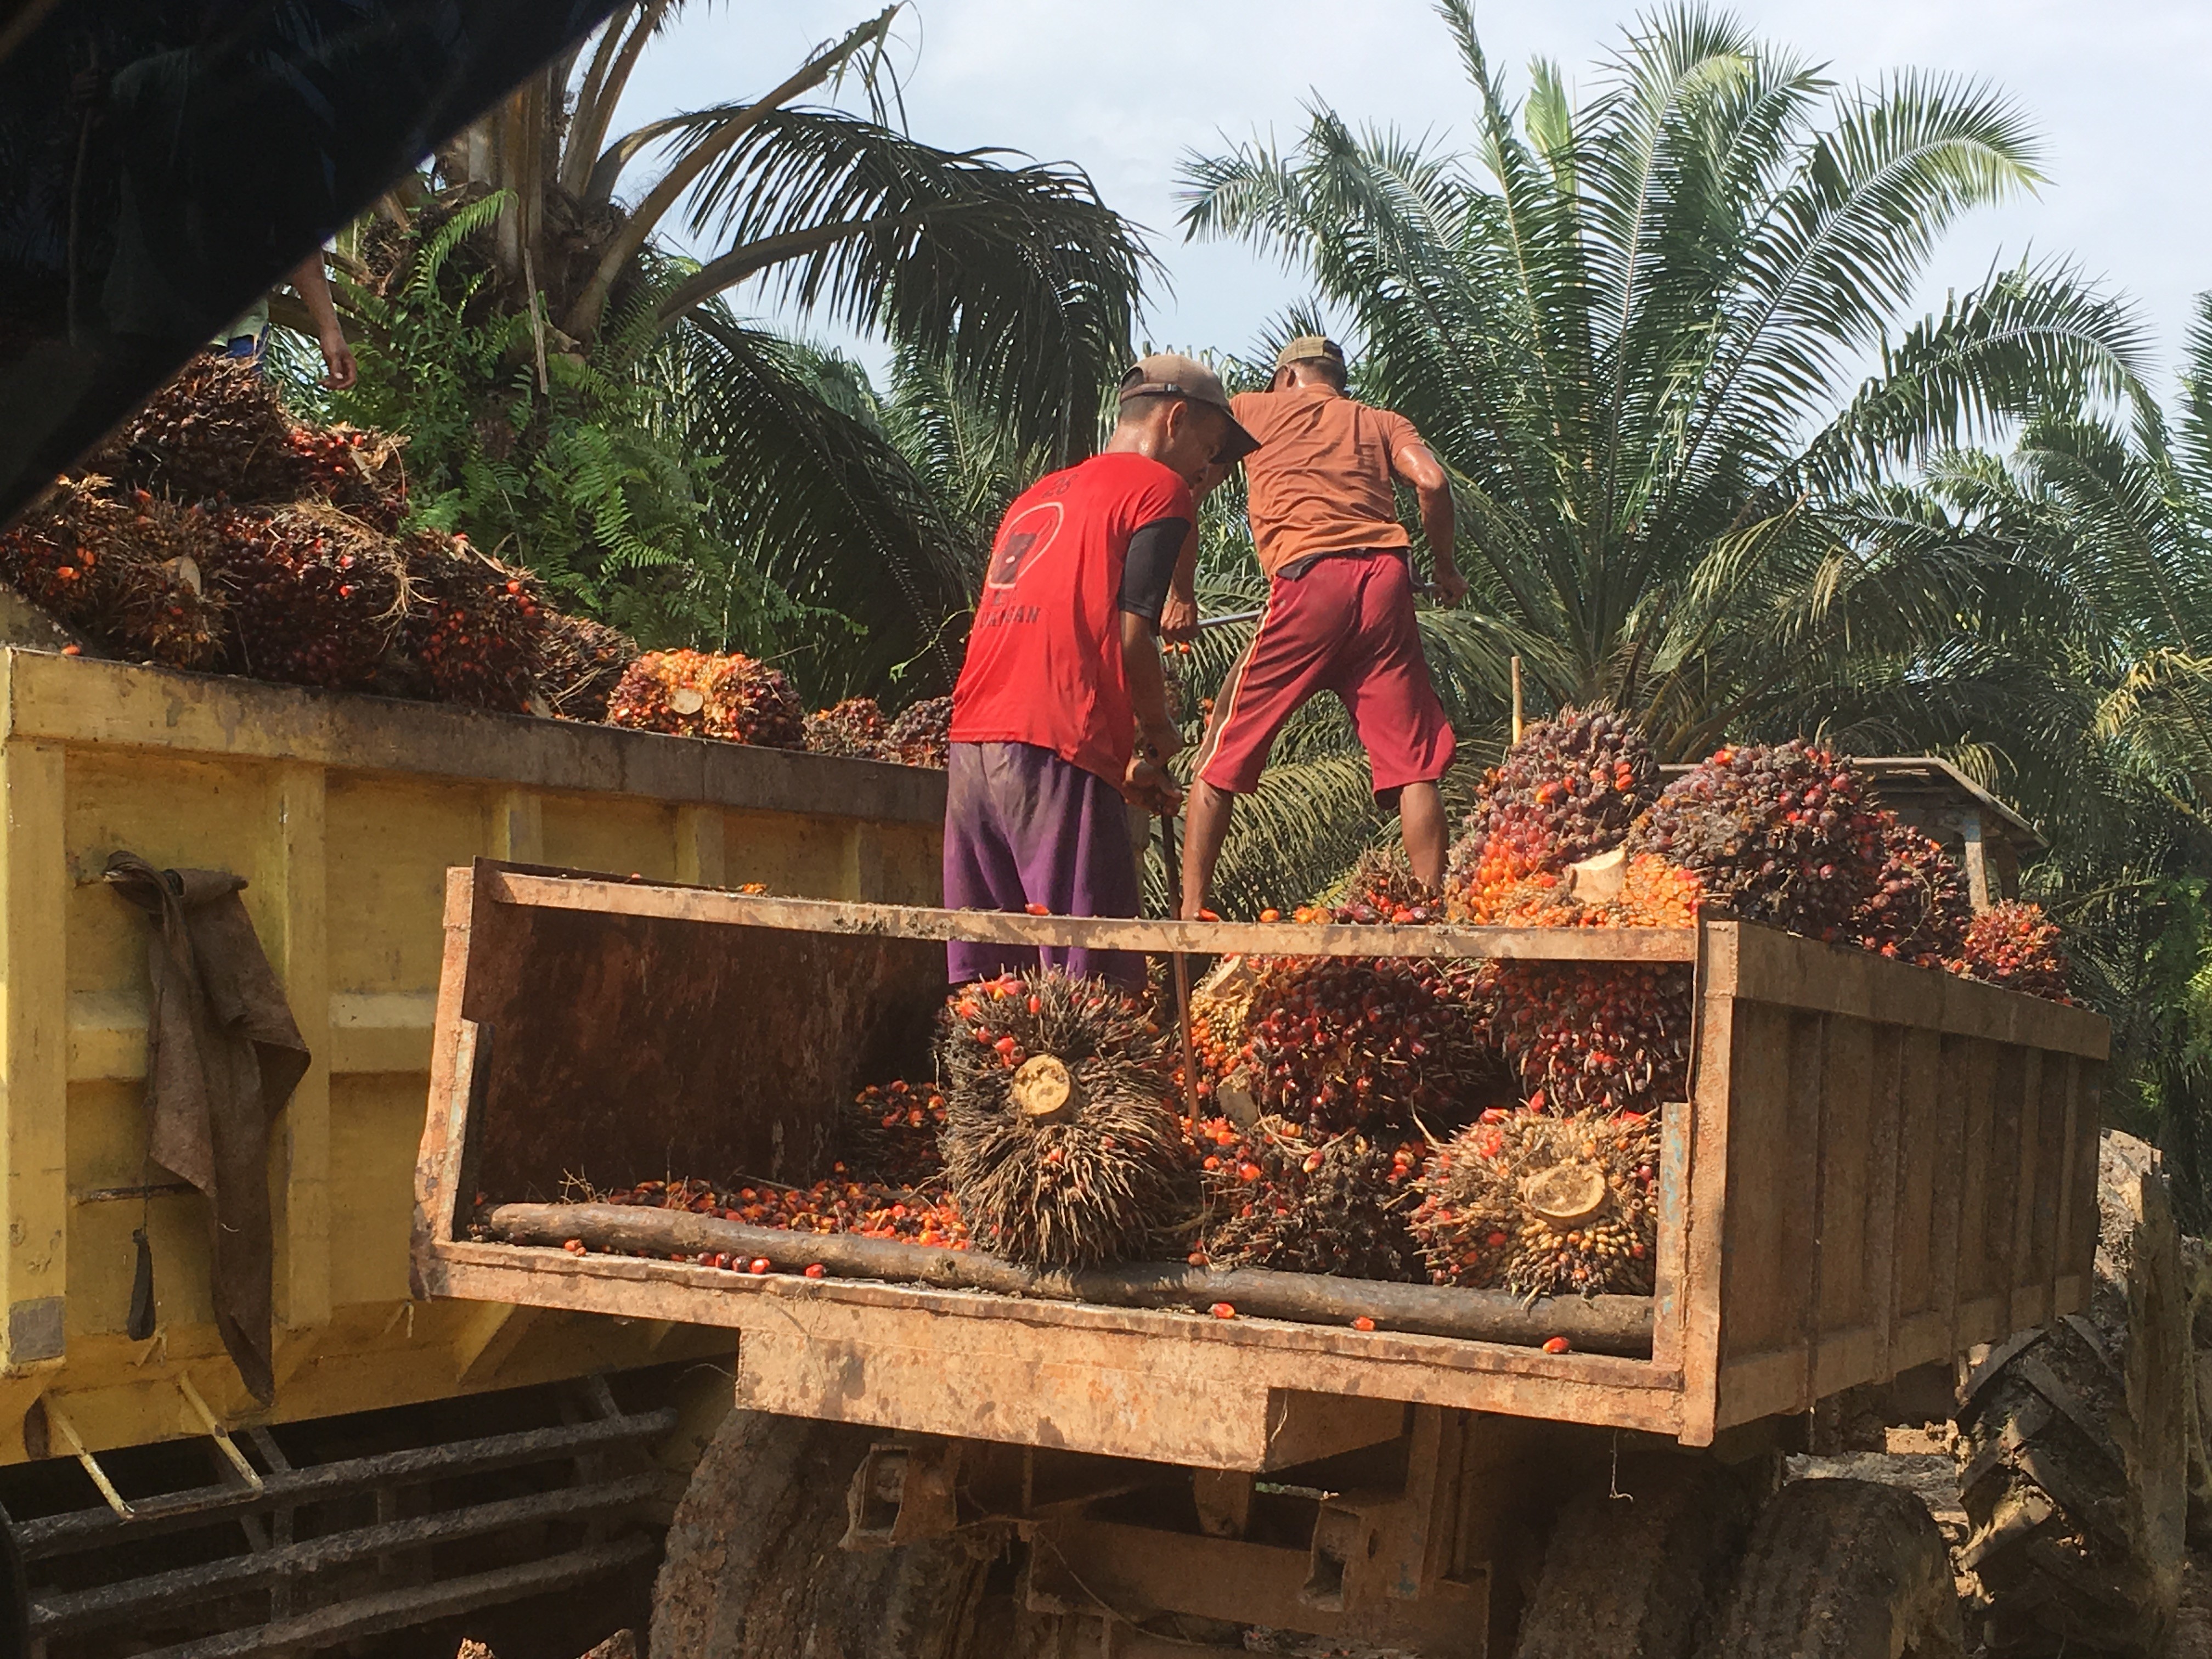 <p>Mengangkut buah sawit untuk dibawa ke pabrik pengolahan. Kecamatan Musi Banyuasin, Sumatera Selatan</p>
